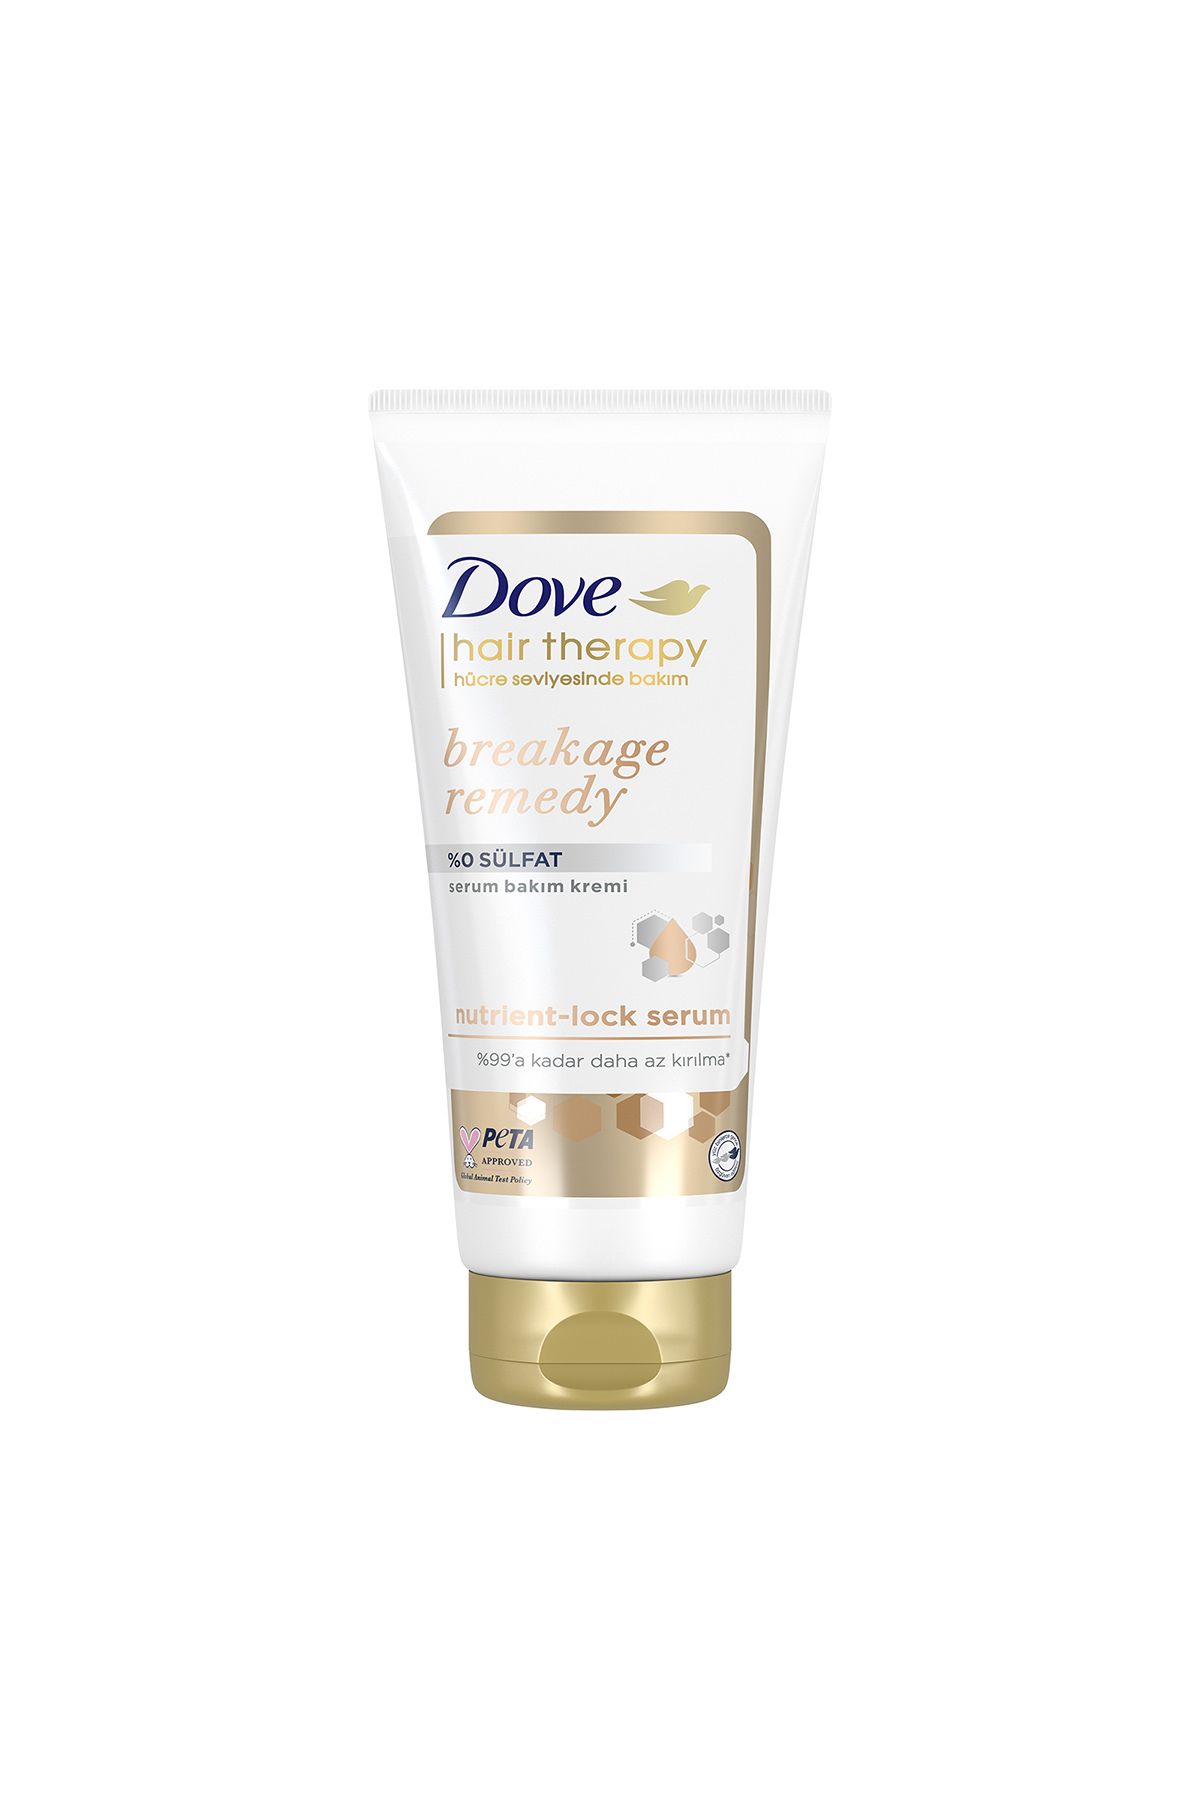 Dove Hair Therapy Sülfatsız Serum Saç Bakım Kremi Breakage Remedy Kırılma Karşıtı 170 ml